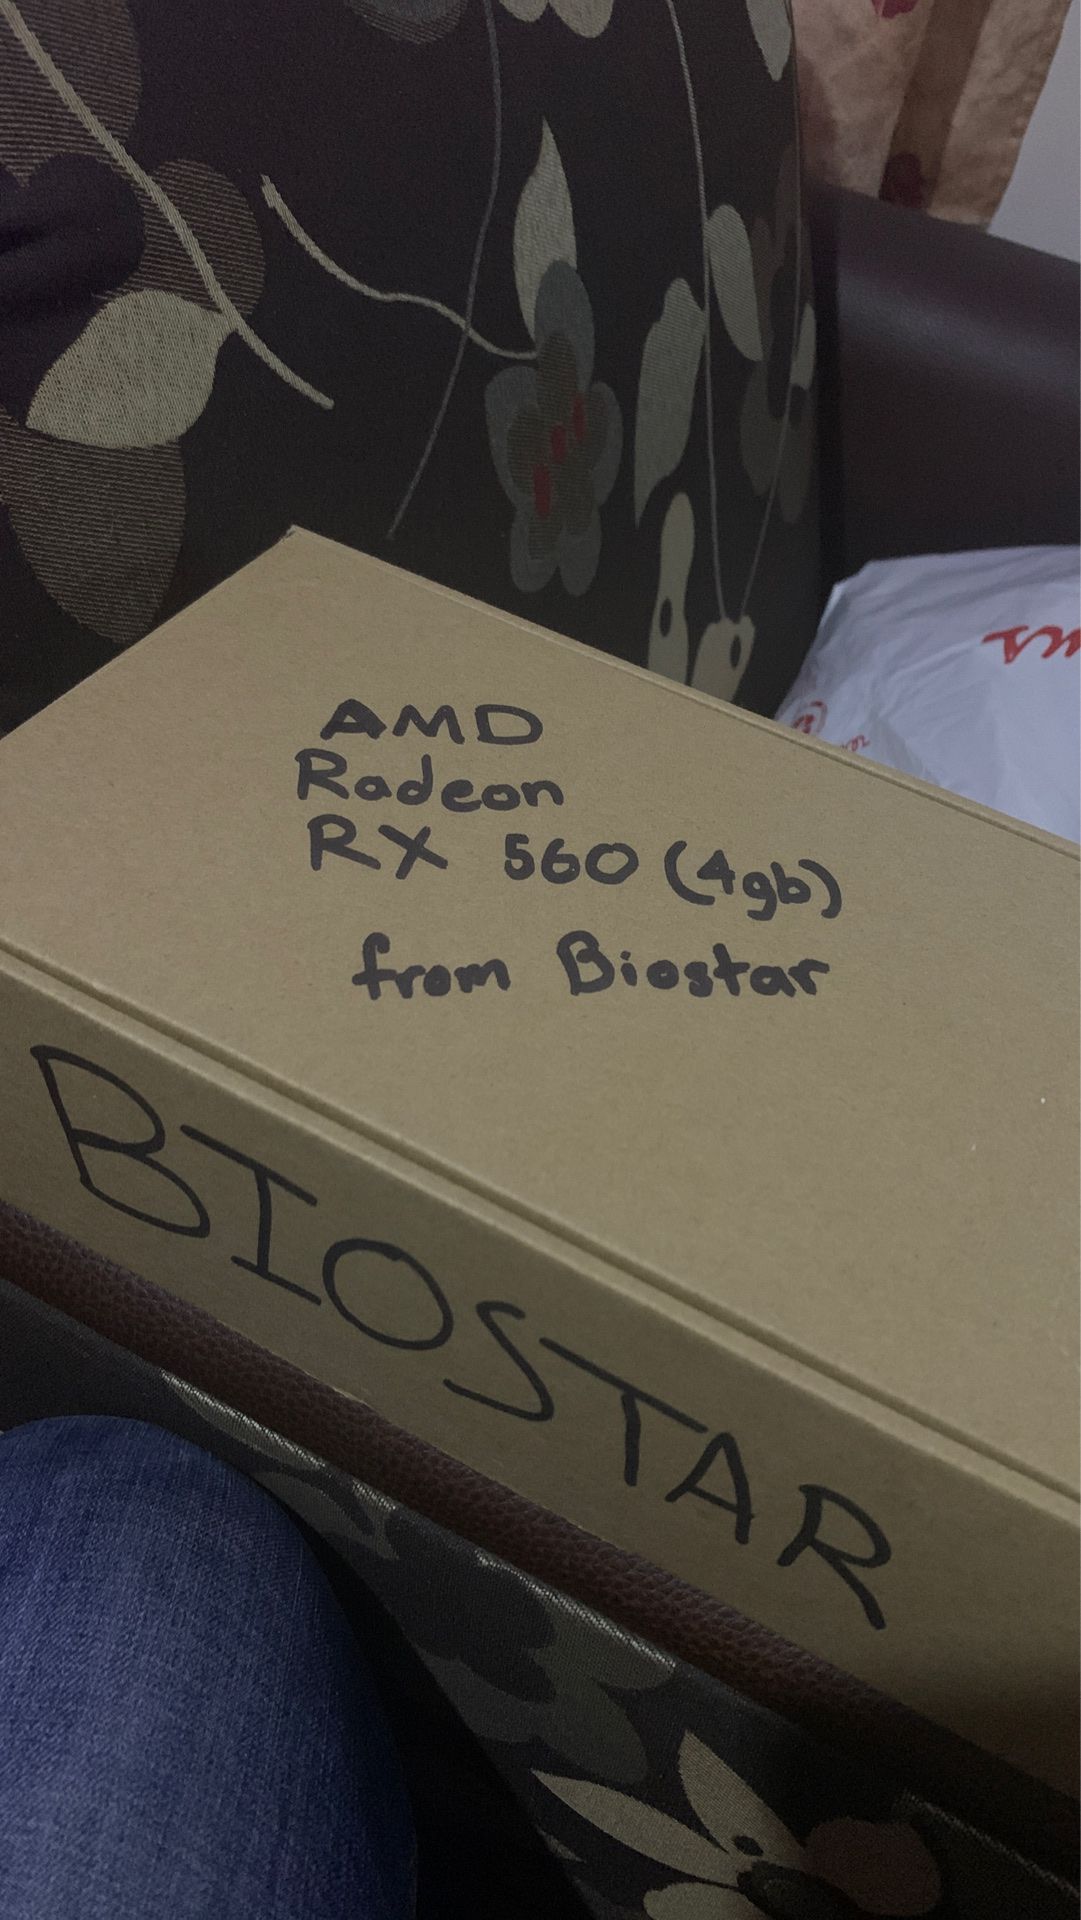 Biostar Radeon RX 560 4GB GPU